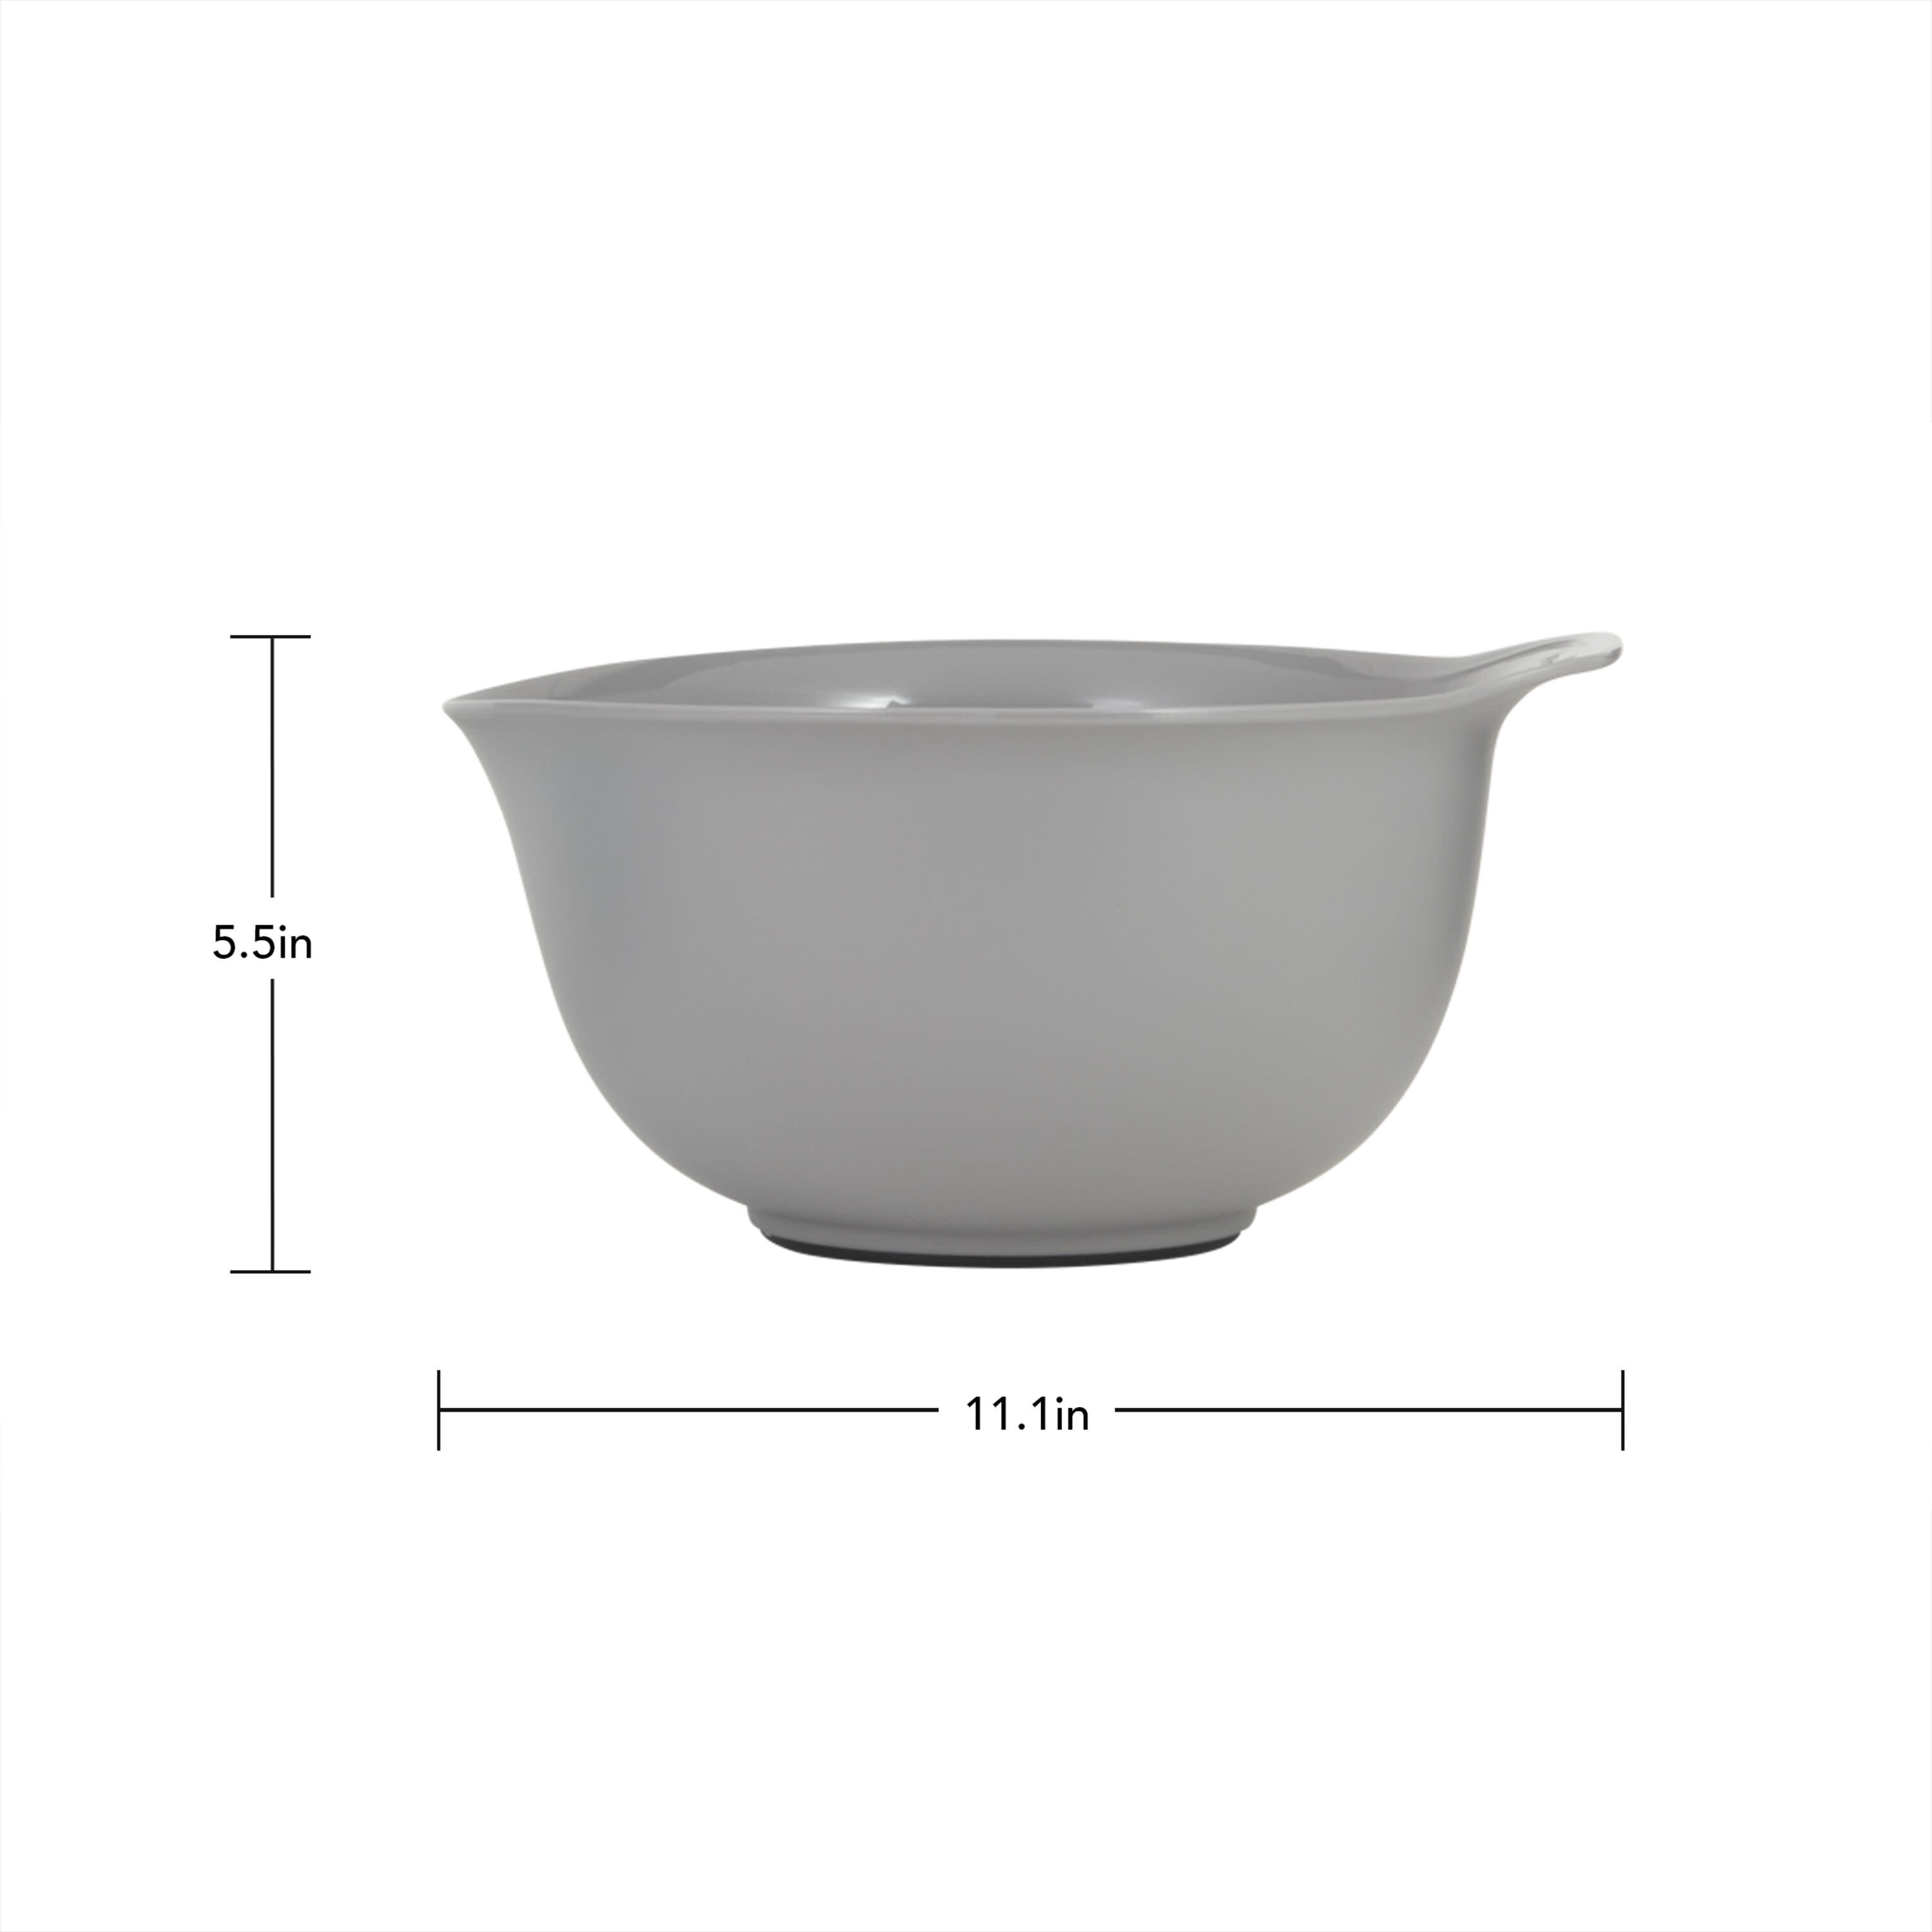 Universal Mixing Bowls (Set of 3) - Mixed Colors, KitchenAid